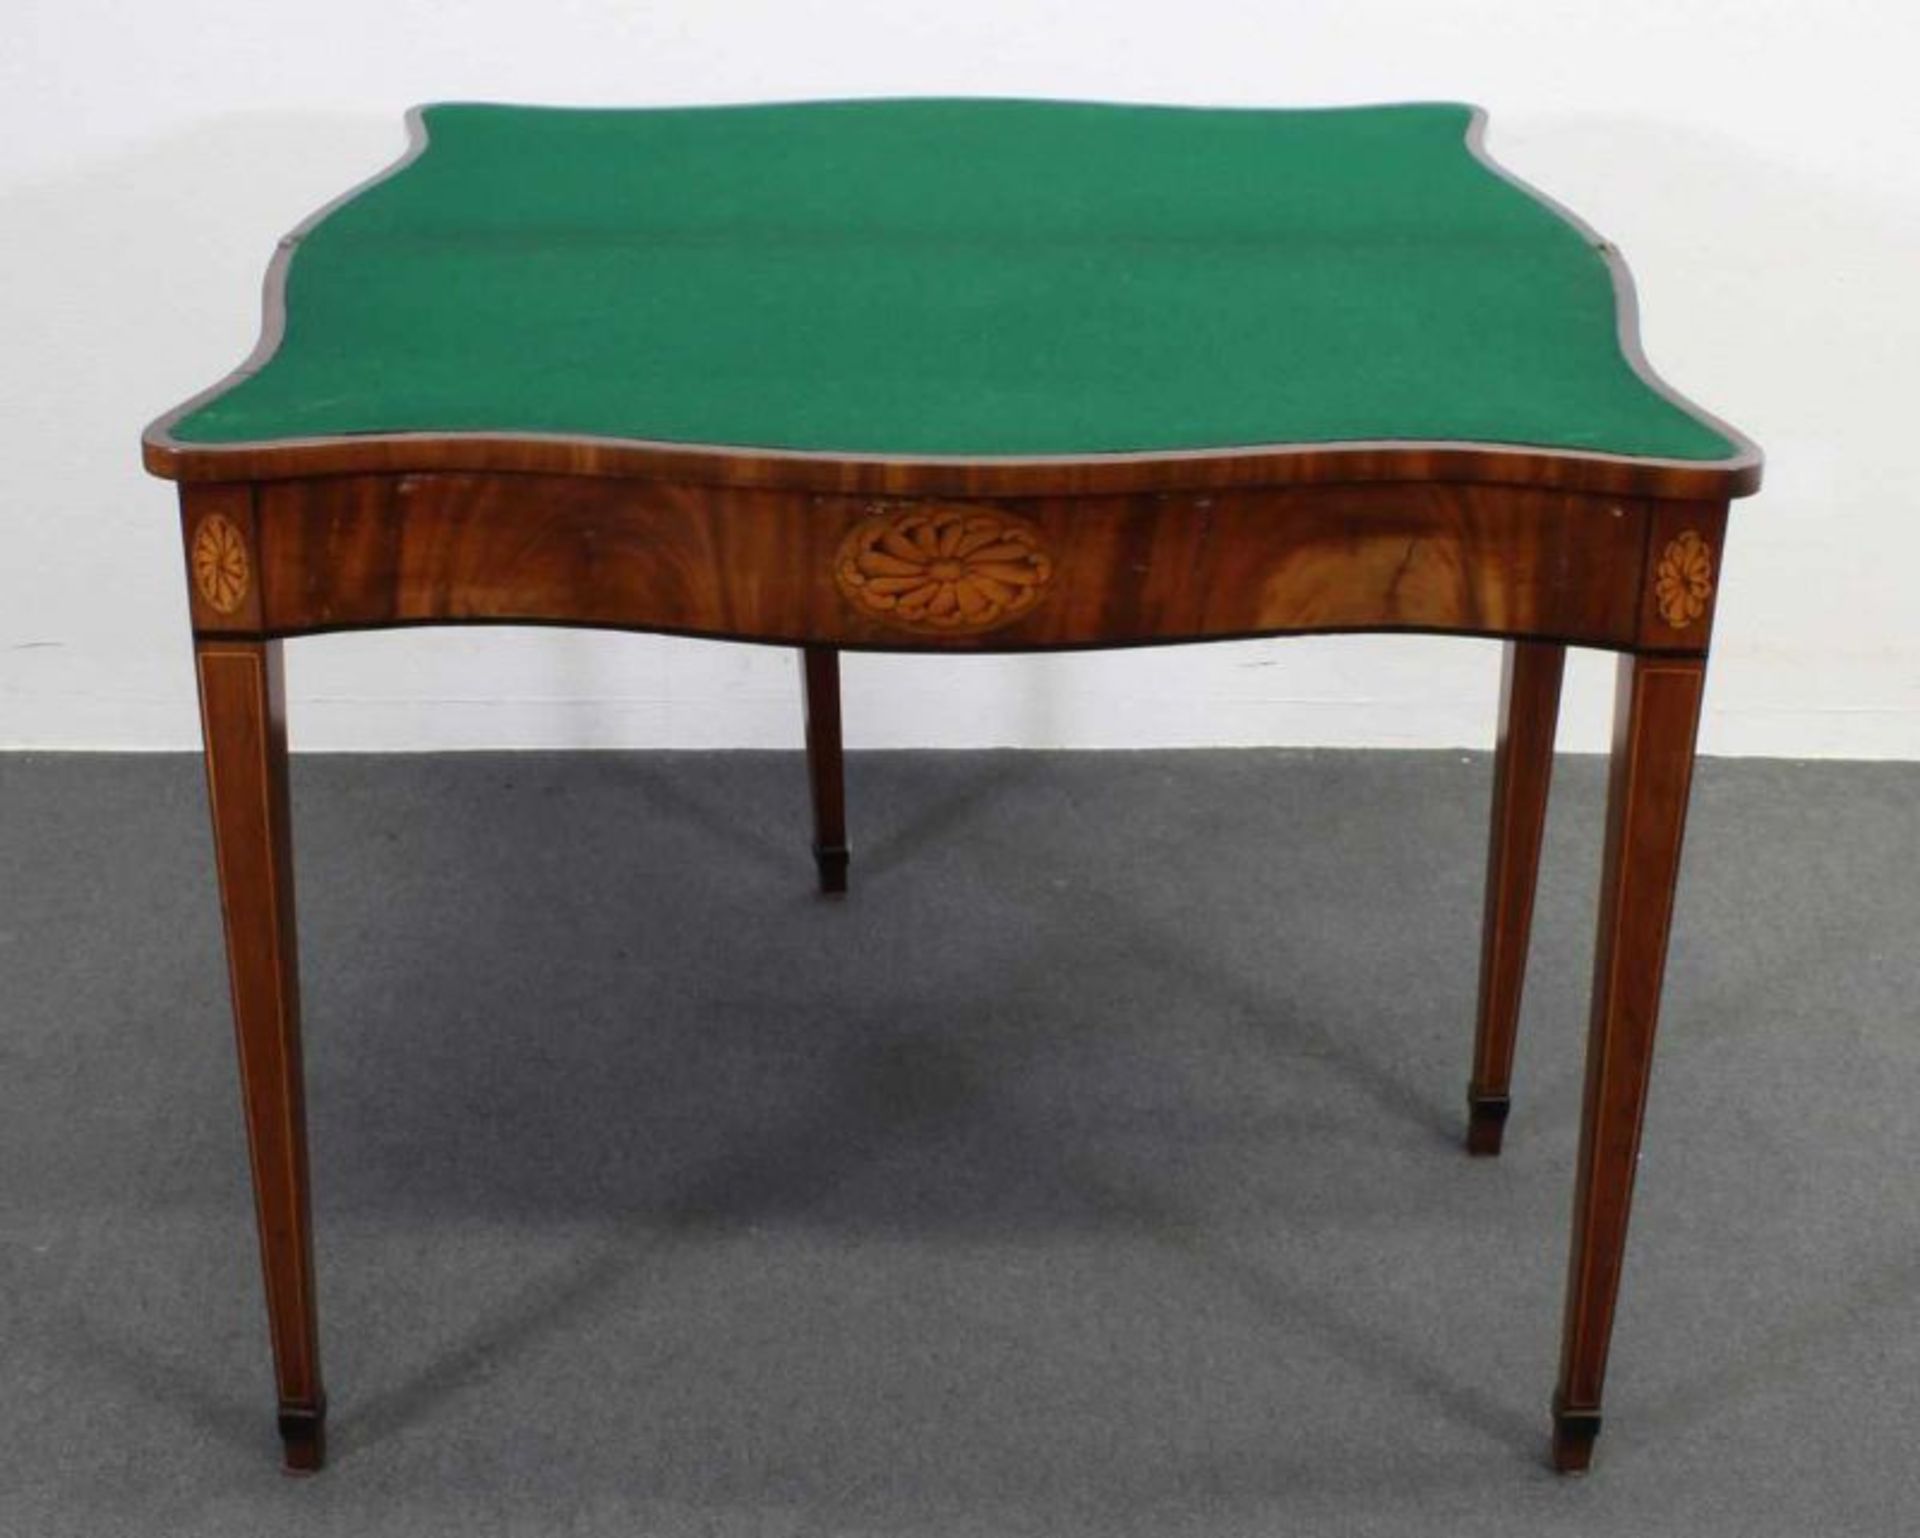 Spieltisch, England, Ende 18. Jh., Mahagoni mit Einlegearbeit, Platte aufklappbar, innen - Image 2 of 2